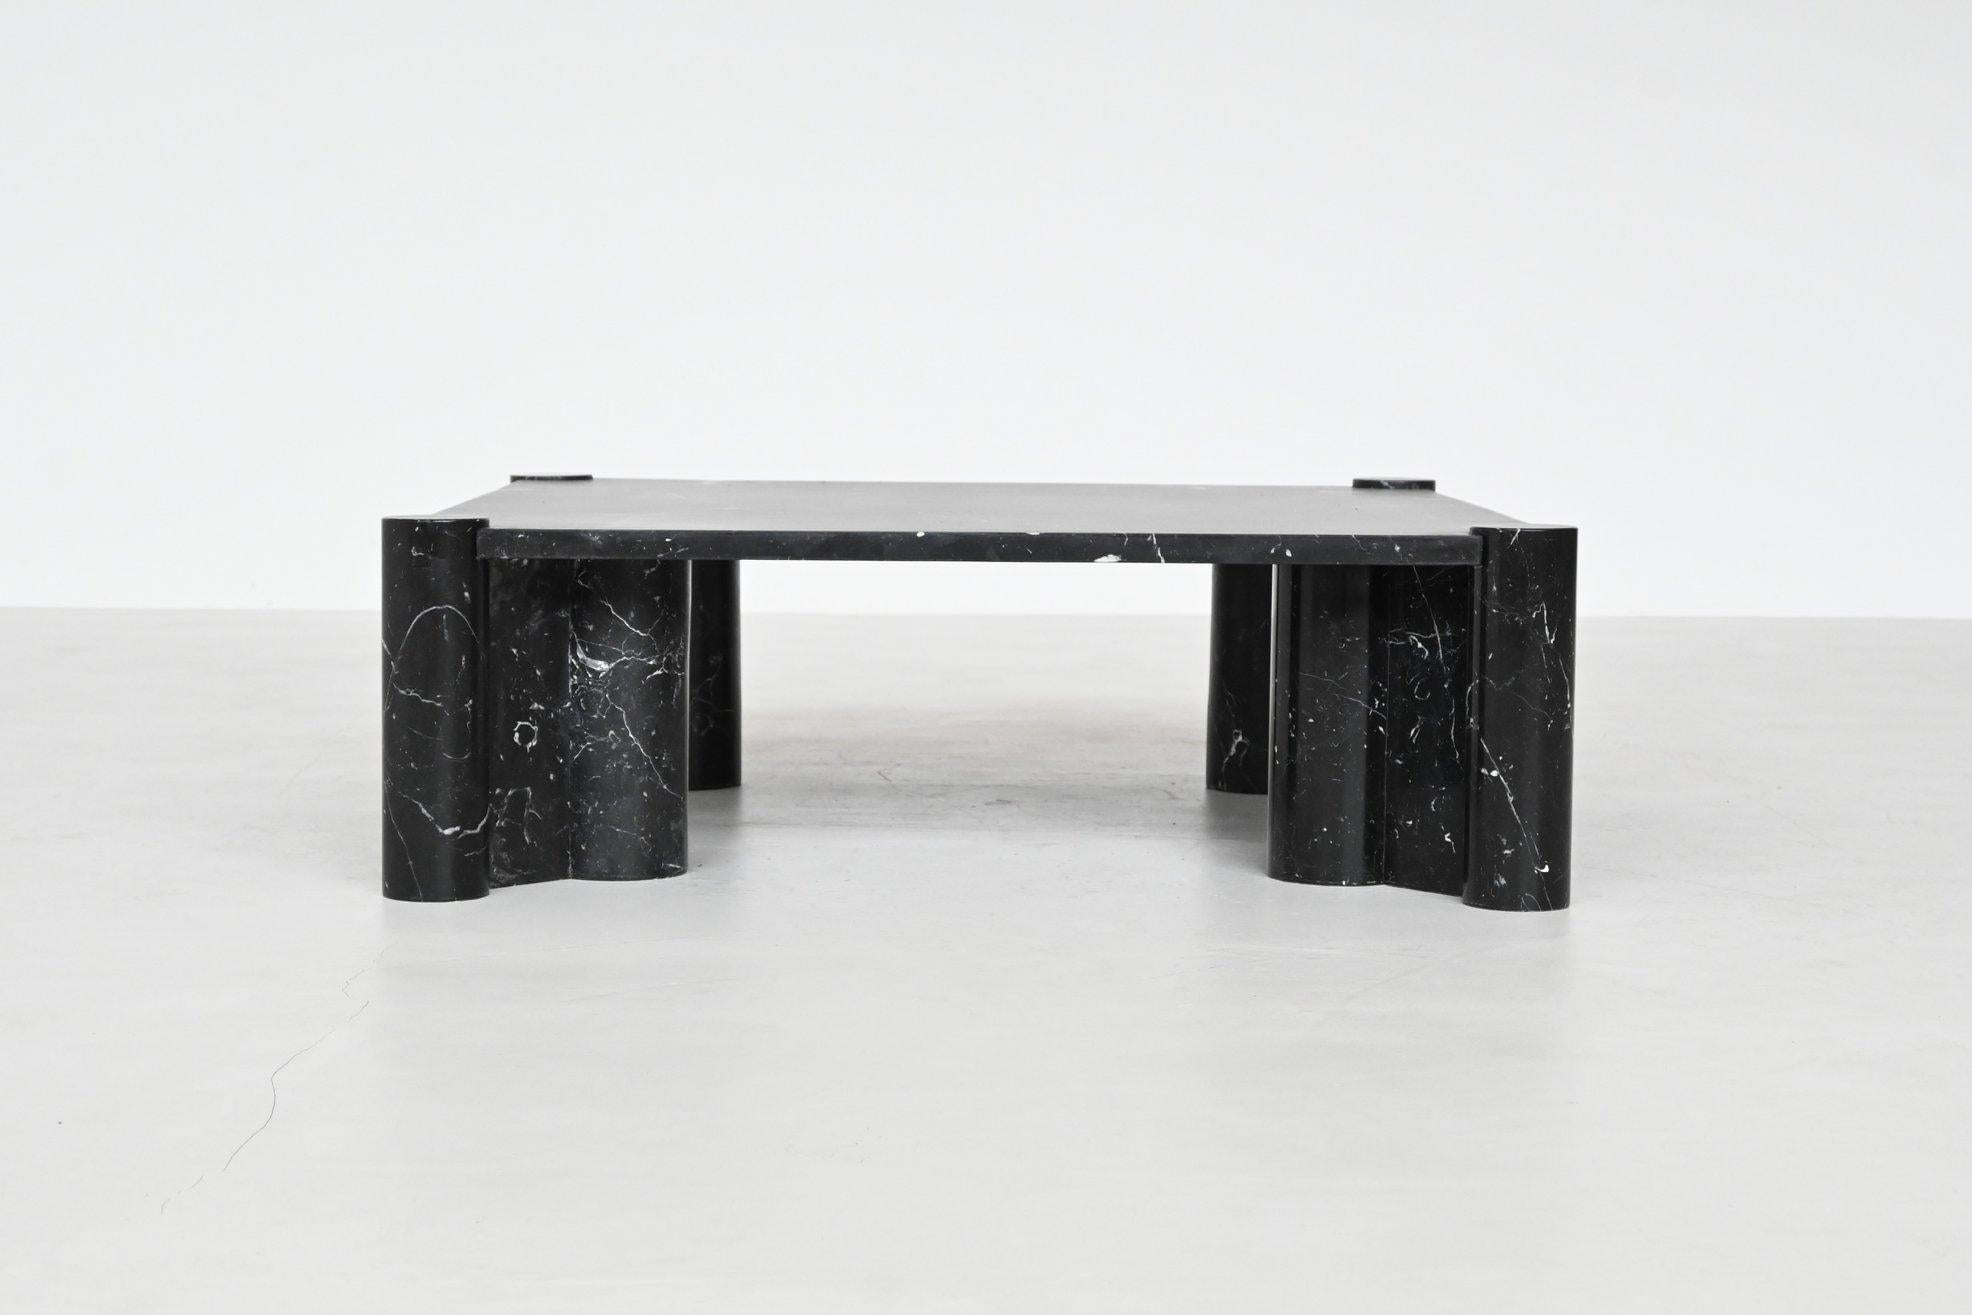 Impressionnante table basse 'Jumbo' conçue par Gae Aulenti et fabriquée par Knoll International, Italie 1965. Cet exemplaire a été réalisé dans un magnifique marbre Marquina noir veiné de blanc. Ce qui rend cette table si particulière est son design